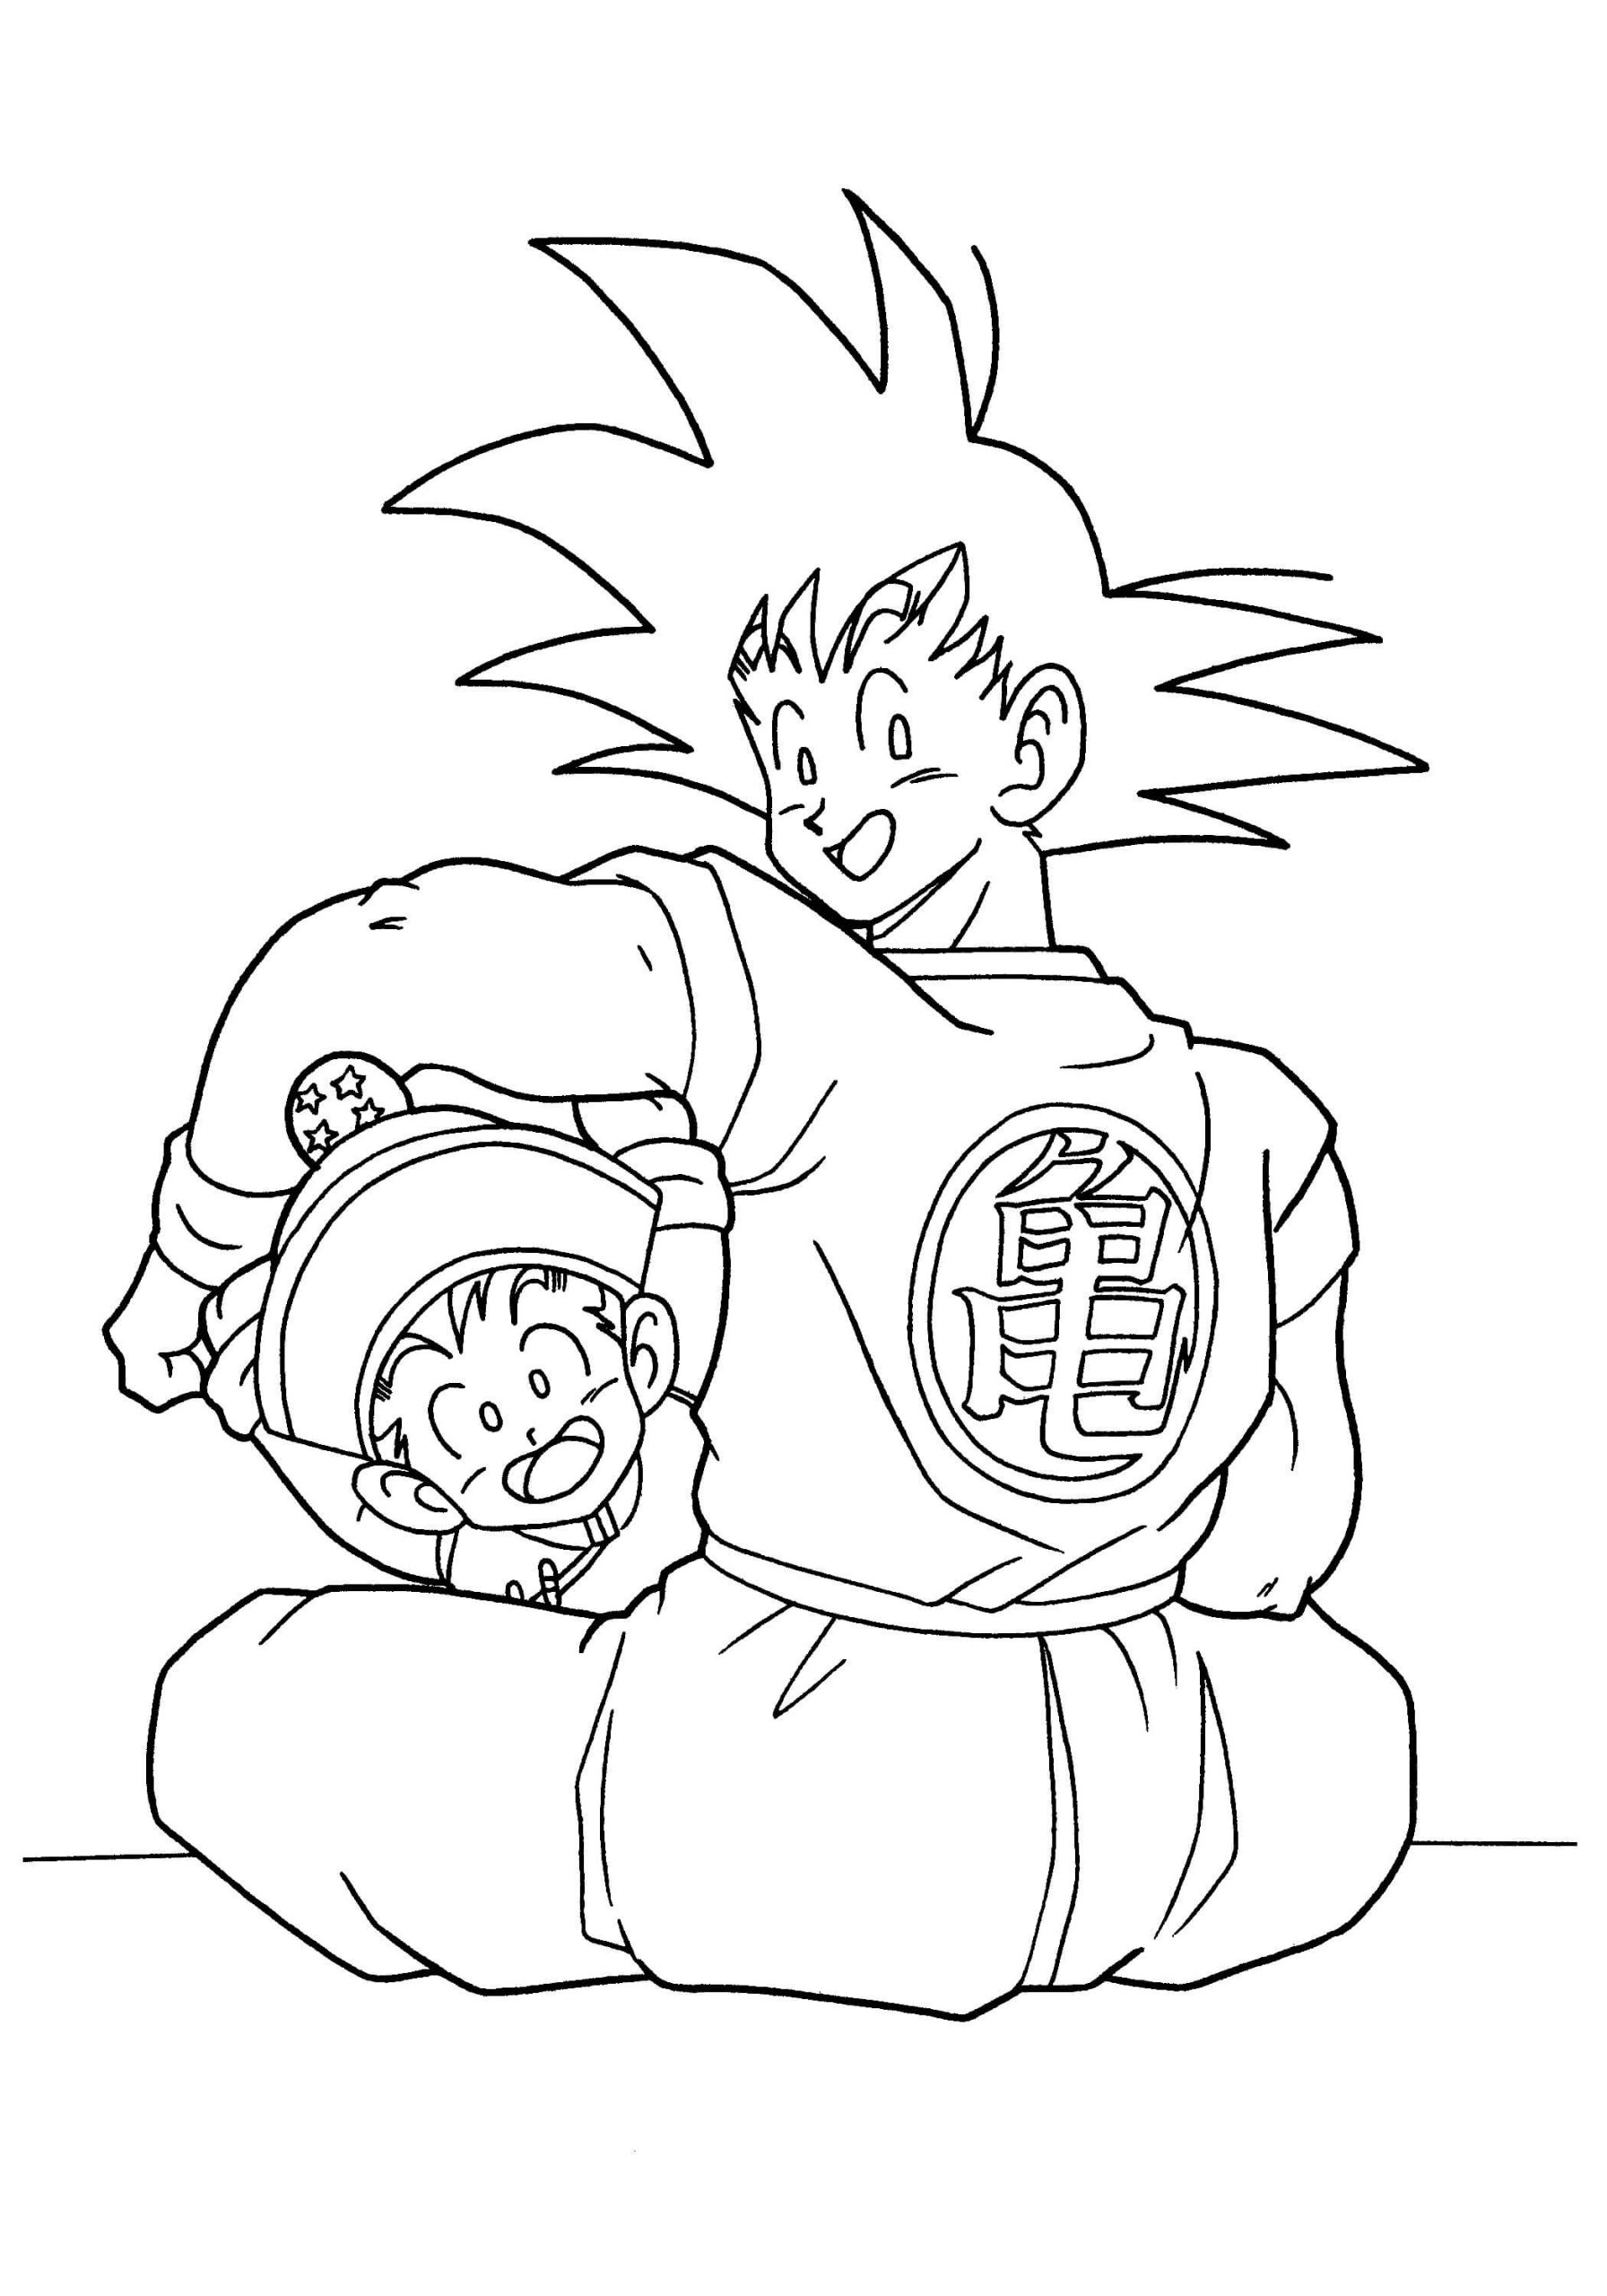 Goku Ve gohan Coloring Page.